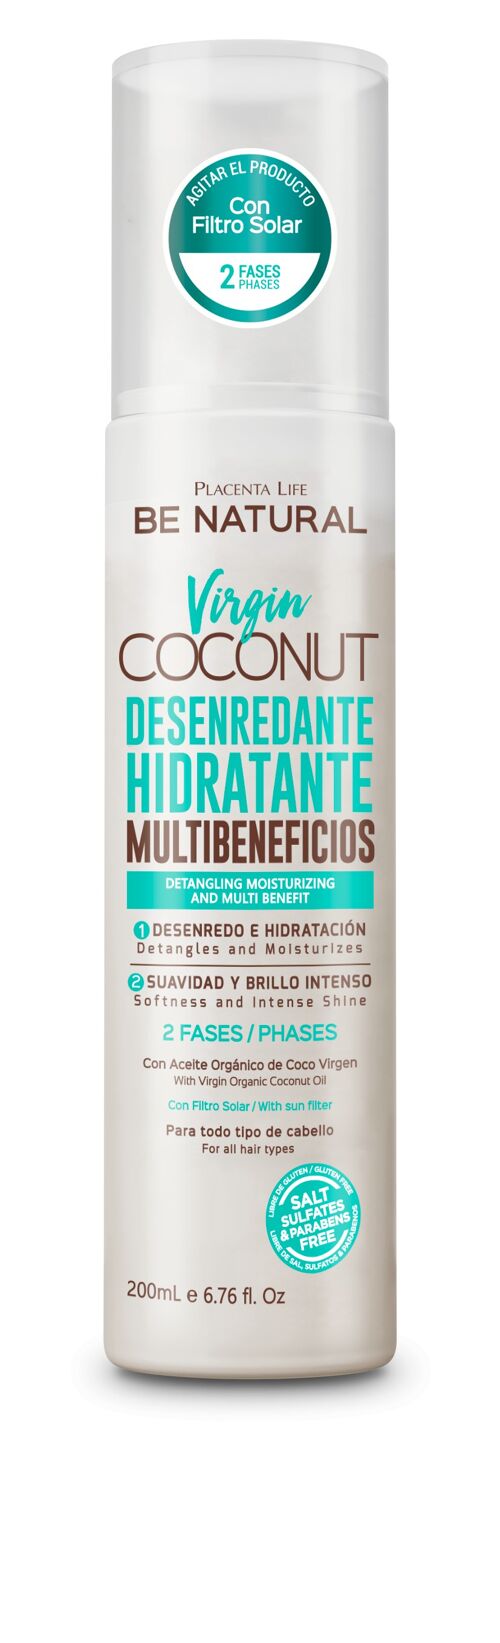 Virgin Coconut. Antifrizz con Aceite de Coco. Restauración total. Hidrata y regenera tu cabello. Contenido 200 ml.